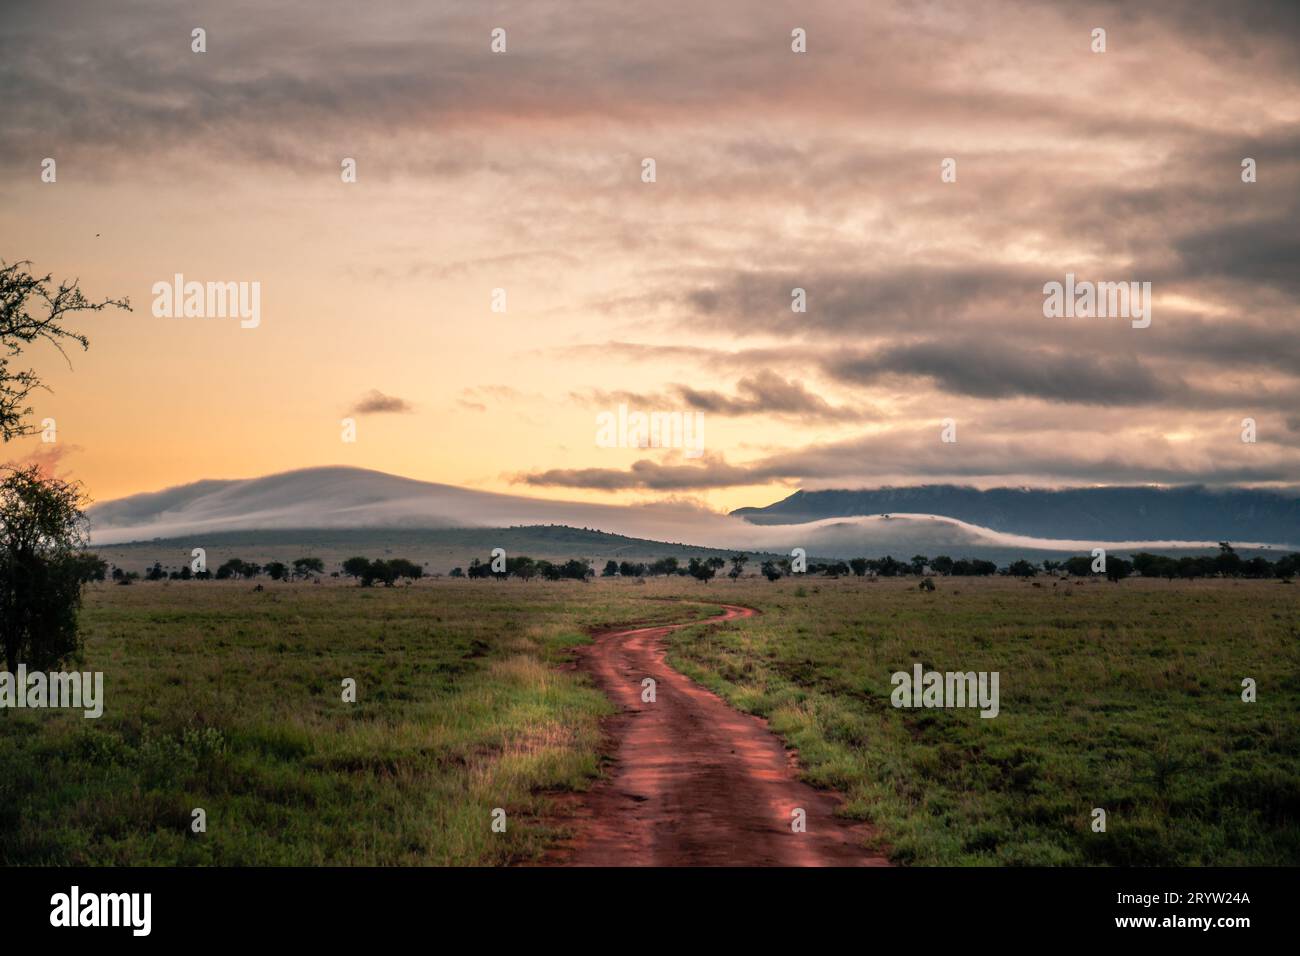 Regenzeit in der Savanne Kenias. Landschaft in Afrika, Sonne, Regen, Regenbogen, Safari-Fotografie. Stockfoto